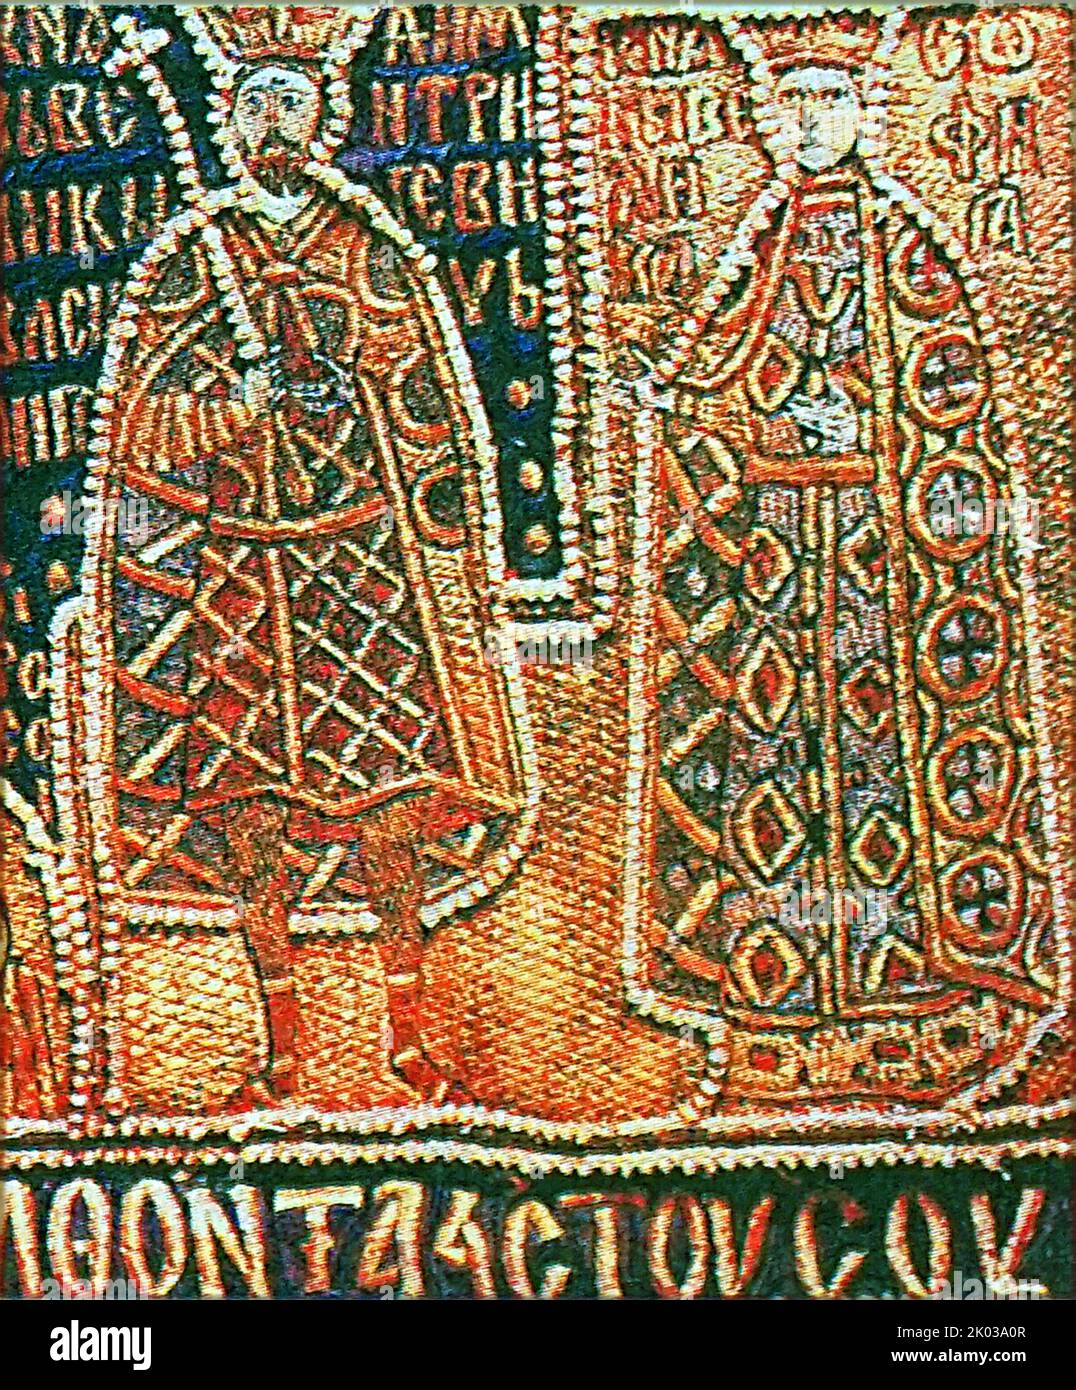 Vasily i di Mosca e Sophia di Lituania. Vasily i Dmitriyevich (Mosca, 1371 – Mosca, 1425) è stato un 1389--1425), era entrato in un'alleanza con il Granducato di Lituania nel 1392 e sposò l'unica figlia di Vytautas il Grande, Sophia Foto Stock